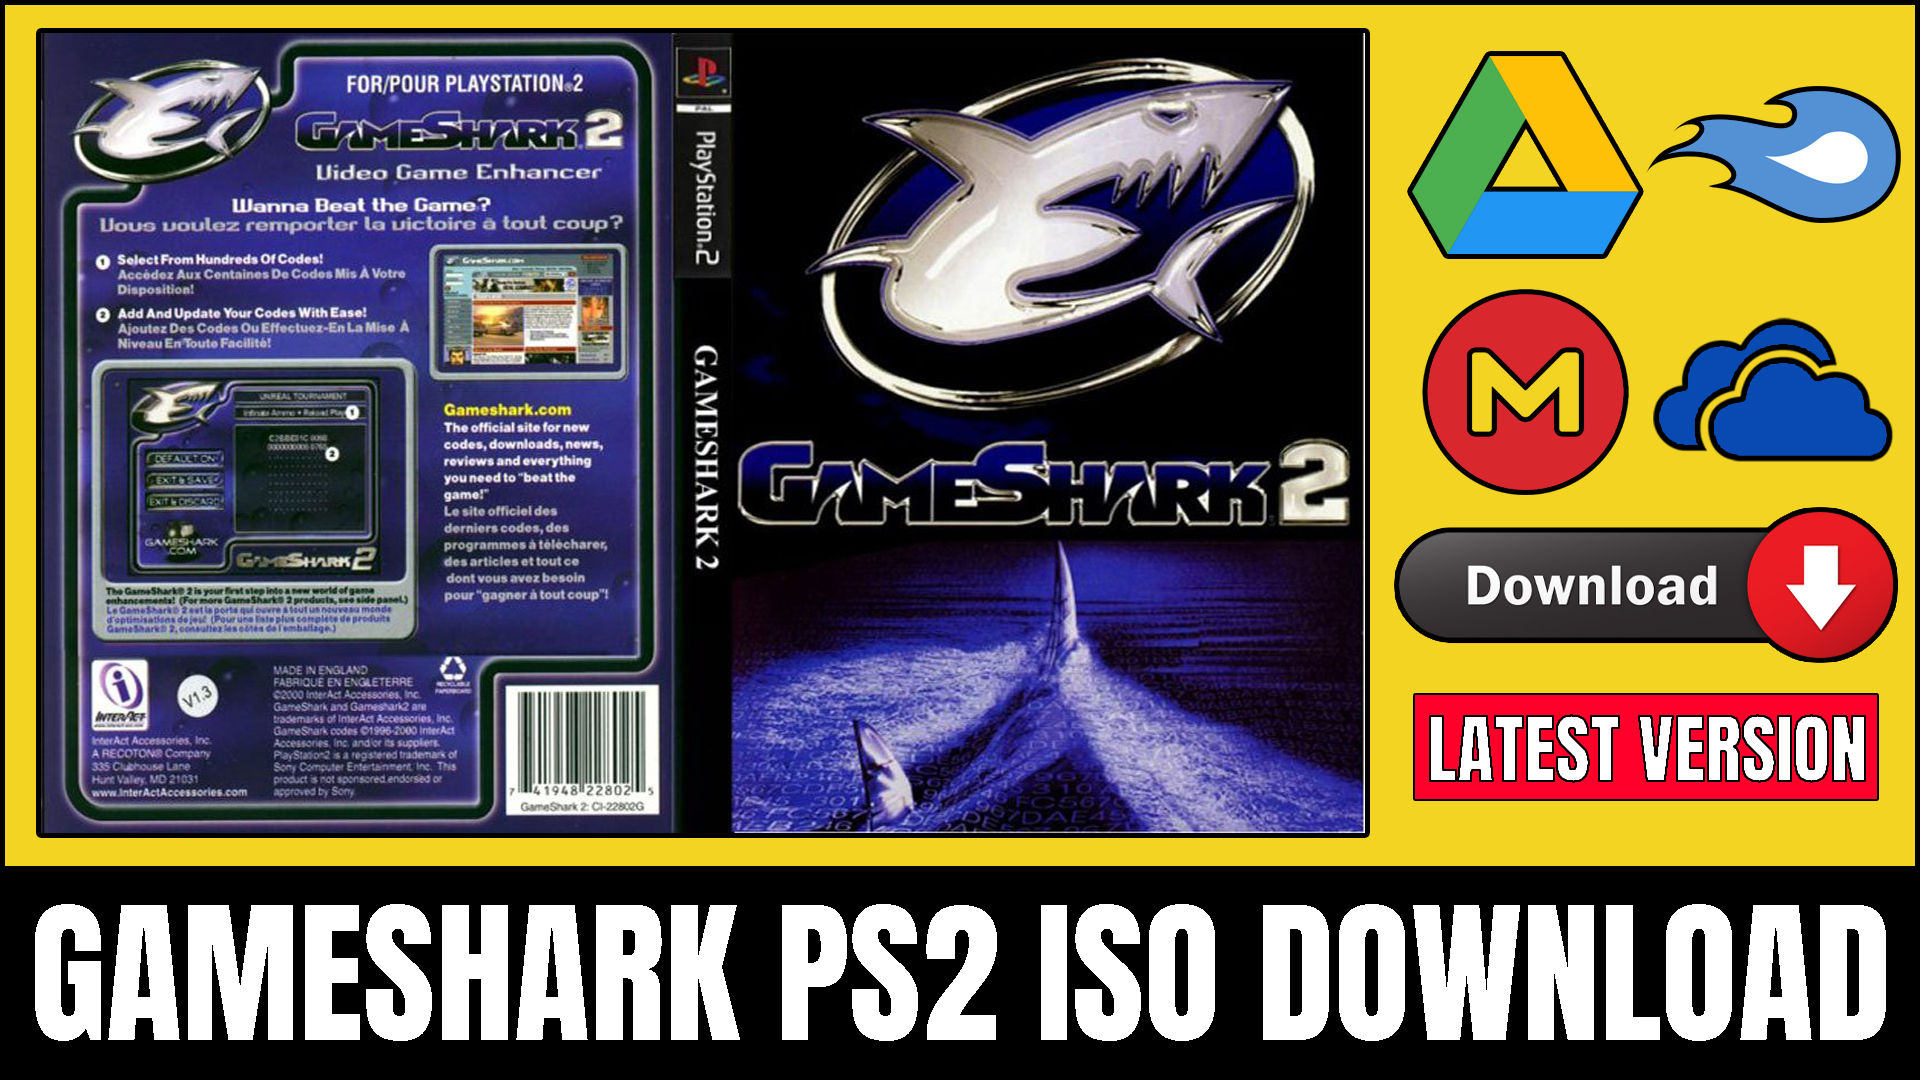 GameShark PS2 ISO Download